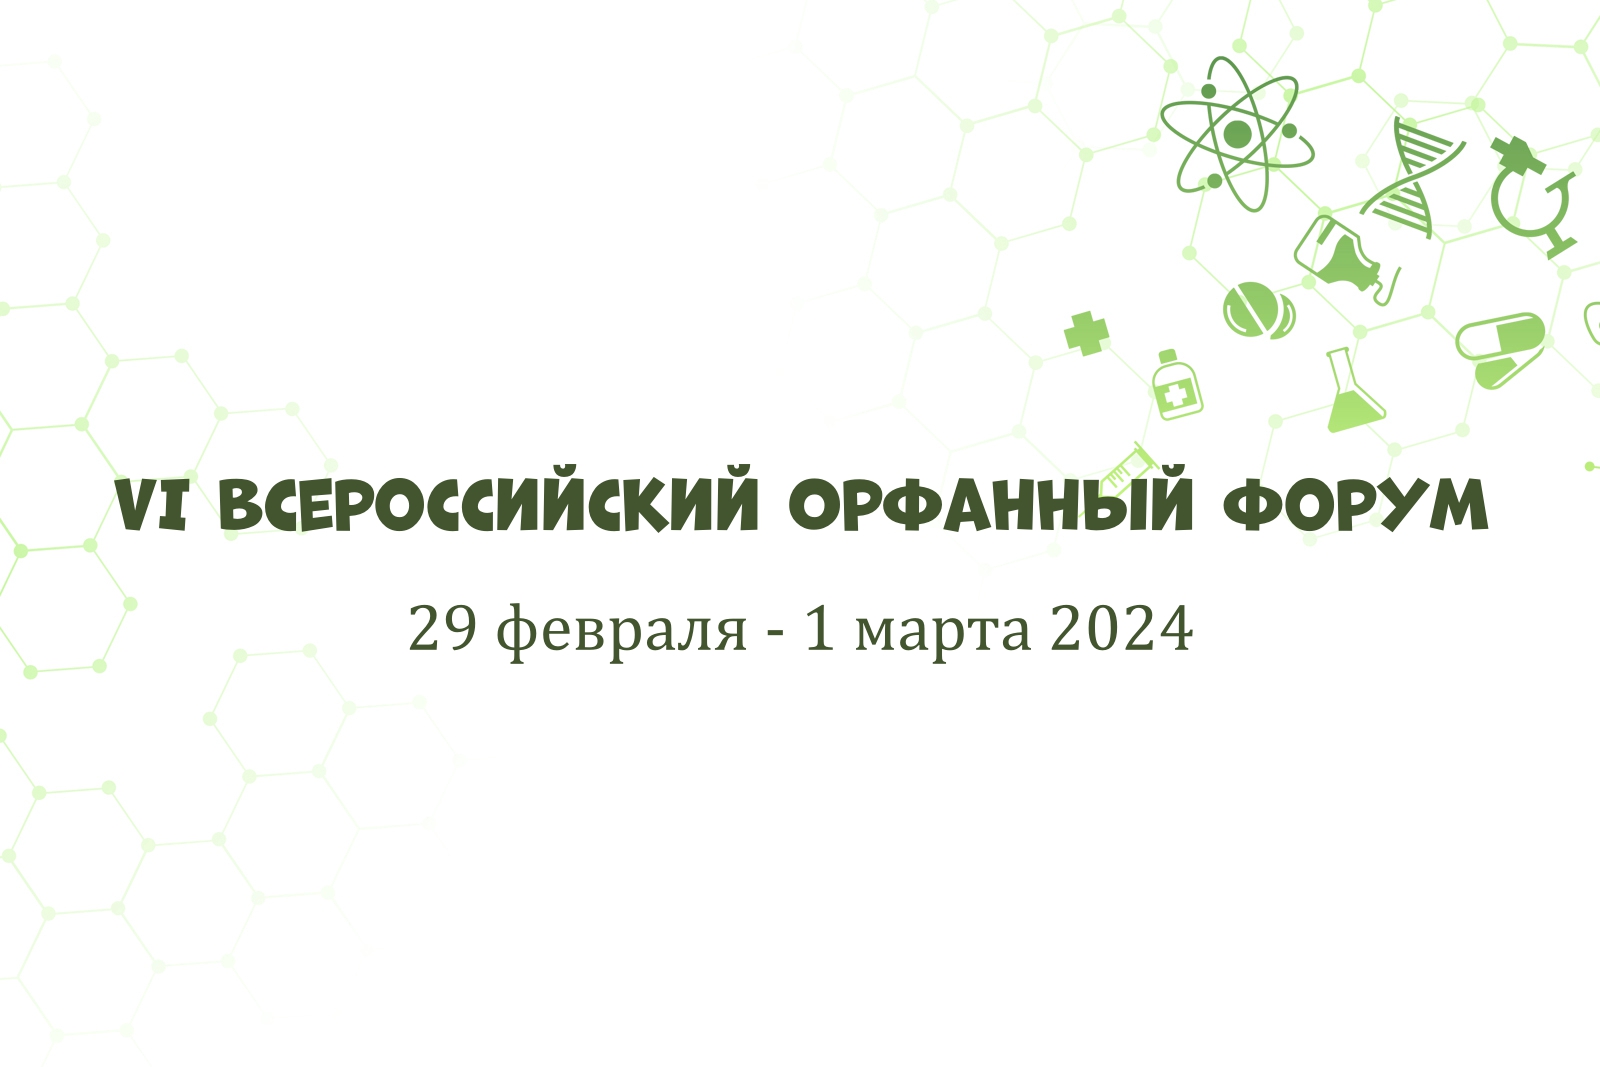 На белом фоне с зелёными научными символами надпись "VI Всероссийский Орфанный форум 29 февраля - 1 марта 2024"